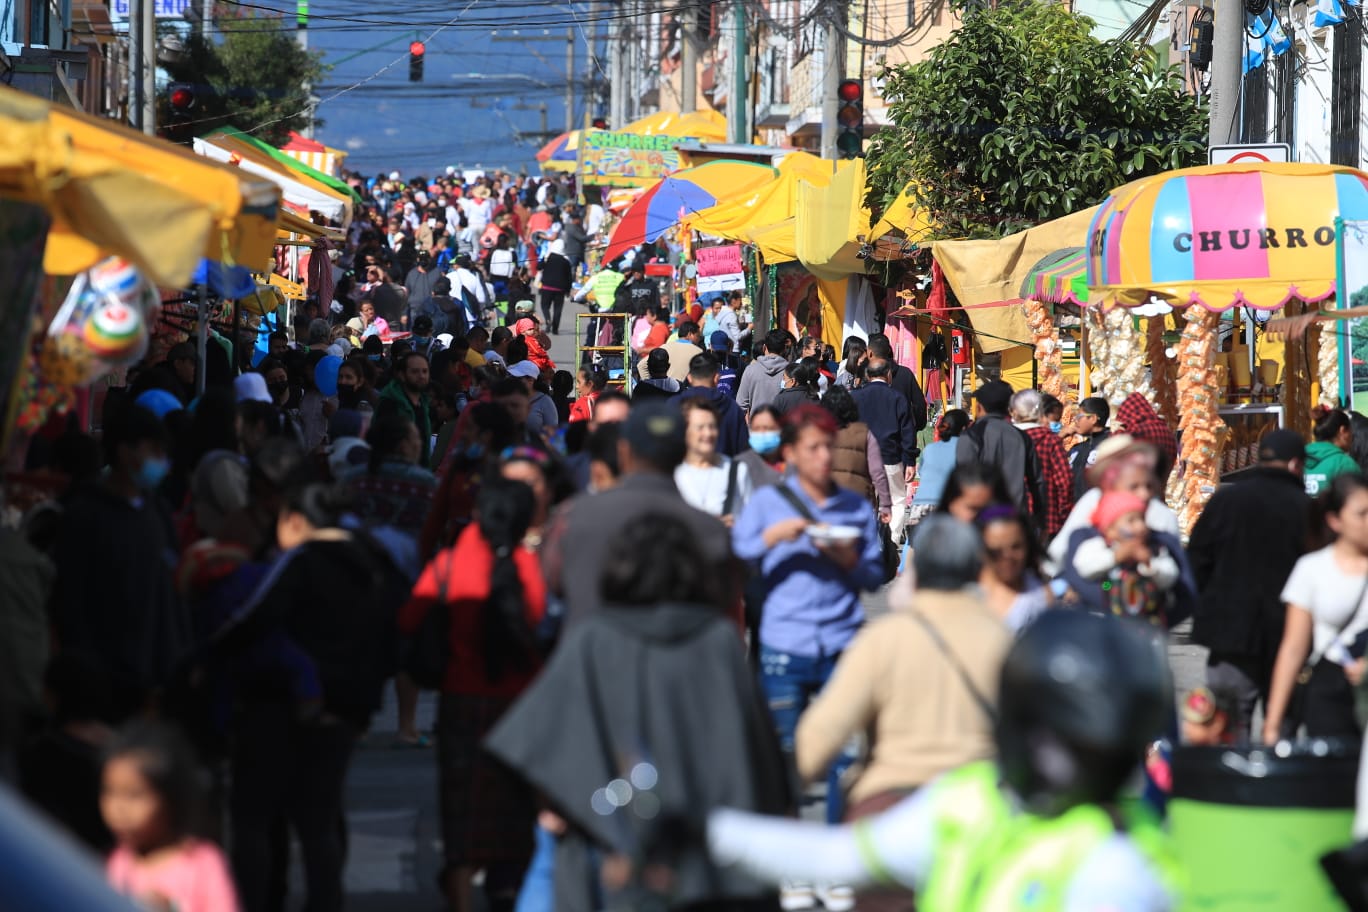 Las autoridades de Salud recomiendan evitar las aglomeraciones, pues estas son foco de contagio de coronavirus. (Foto Prensa Libre: Carlos Hernández Ovalle)